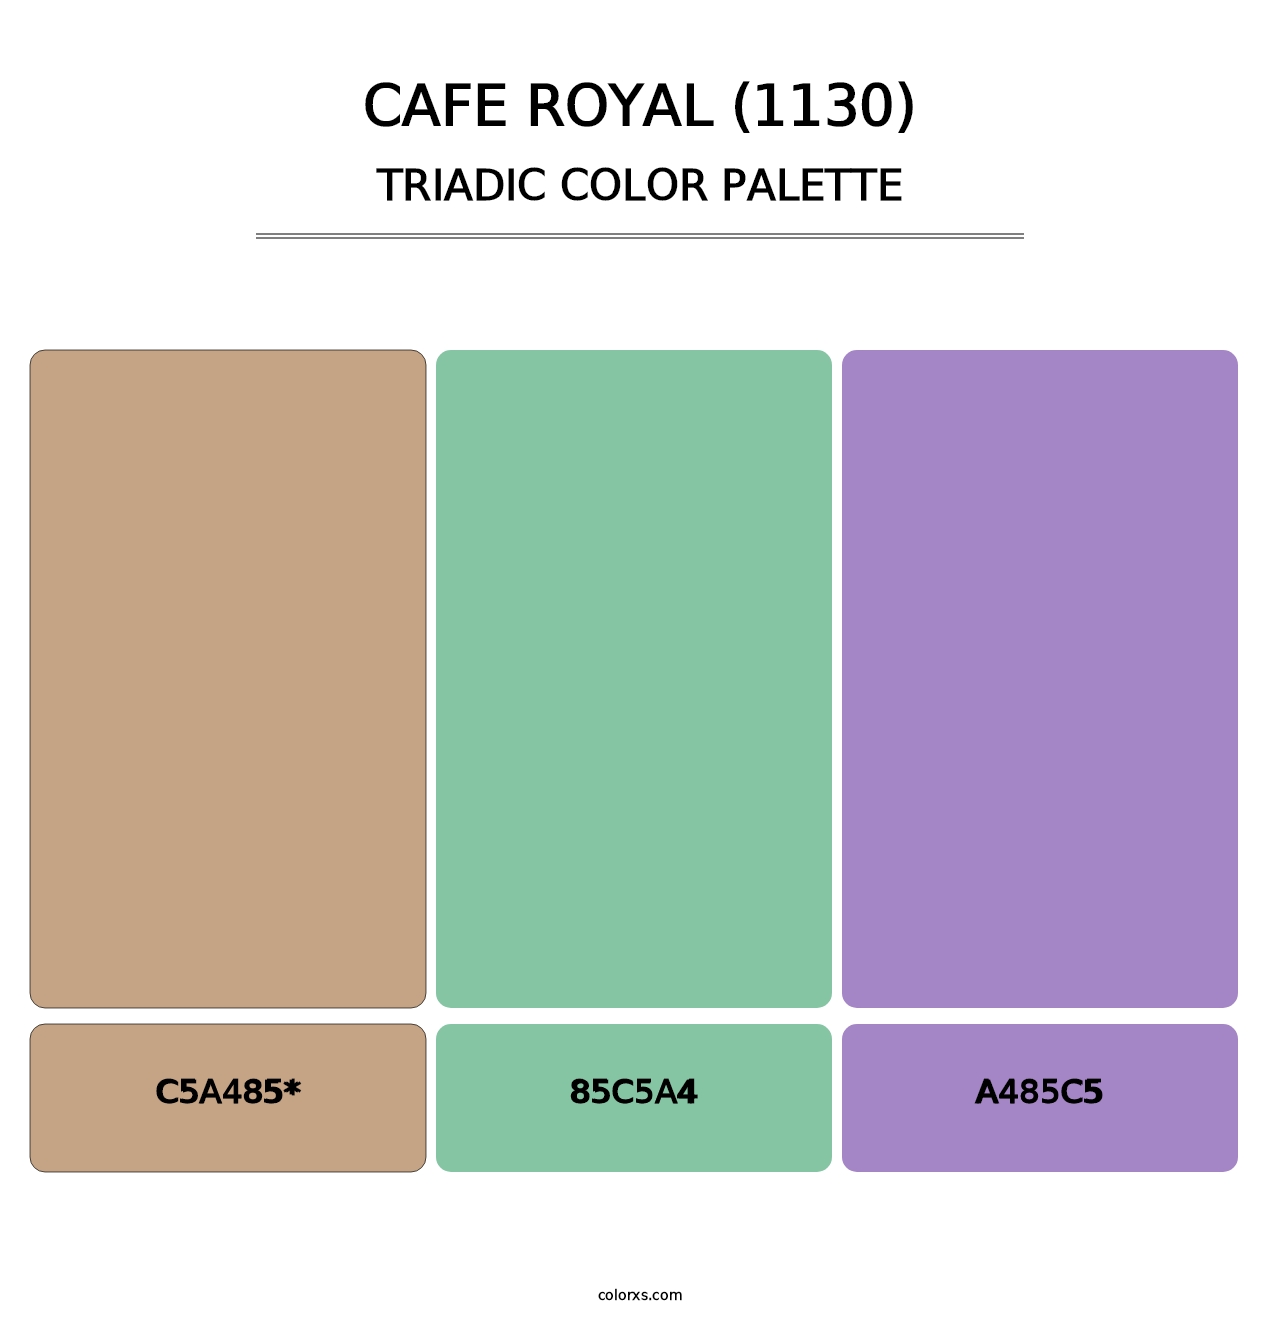 Cafe Royal (1130) - Triadic Color Palette